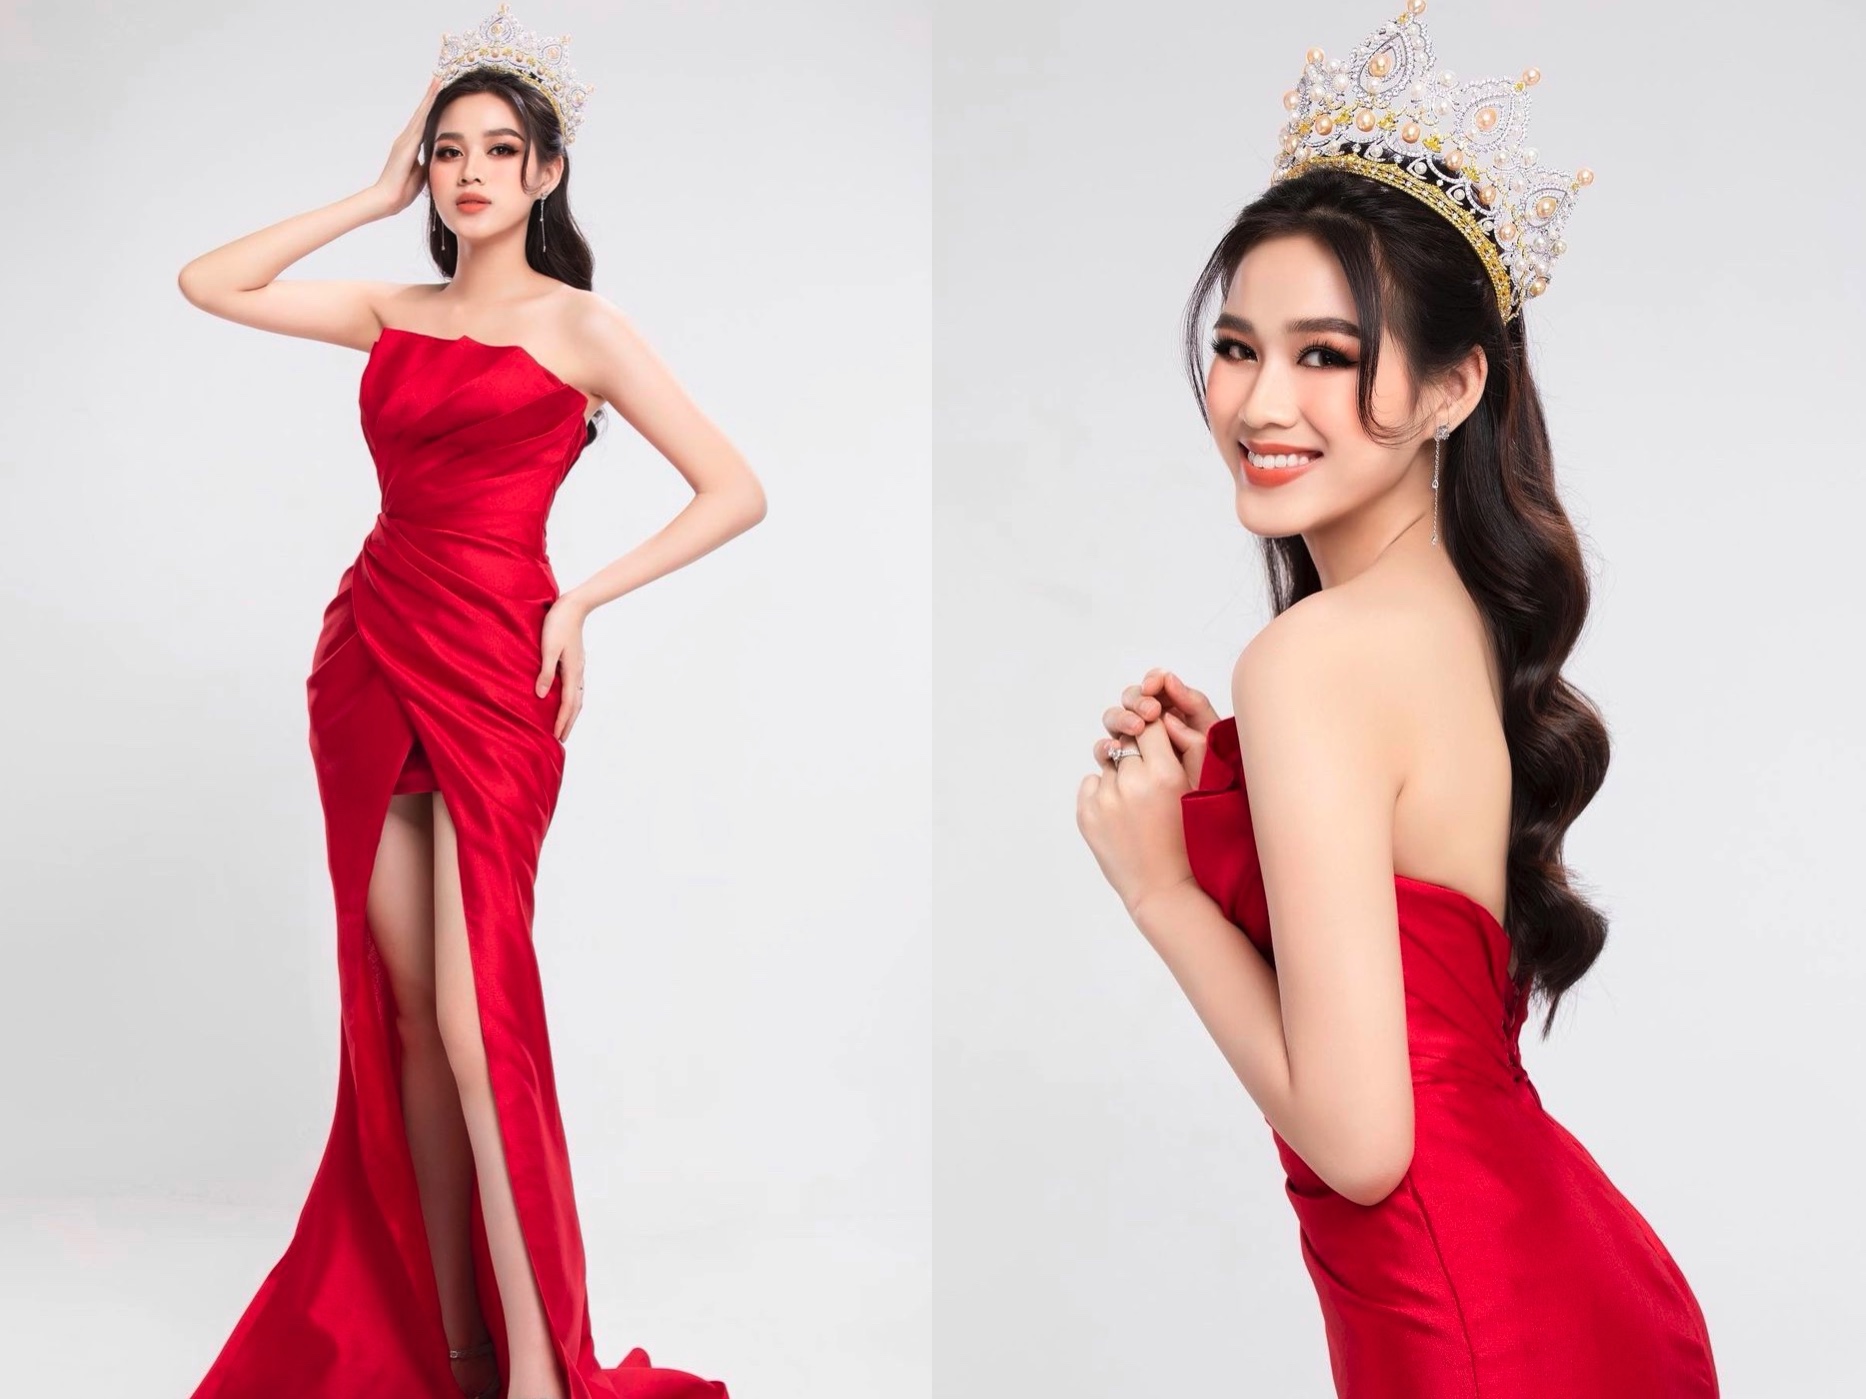 Trong bộ ảnh kỉ niệm sinh nhật tuổi 20, nàng Hoa hậu gây ấn tượng với sự rạng rỡ và tự tin trong chiếc đầm đỏ dáng dài tôn lên nước da trắng cùng đôi chân dài miên man của mình